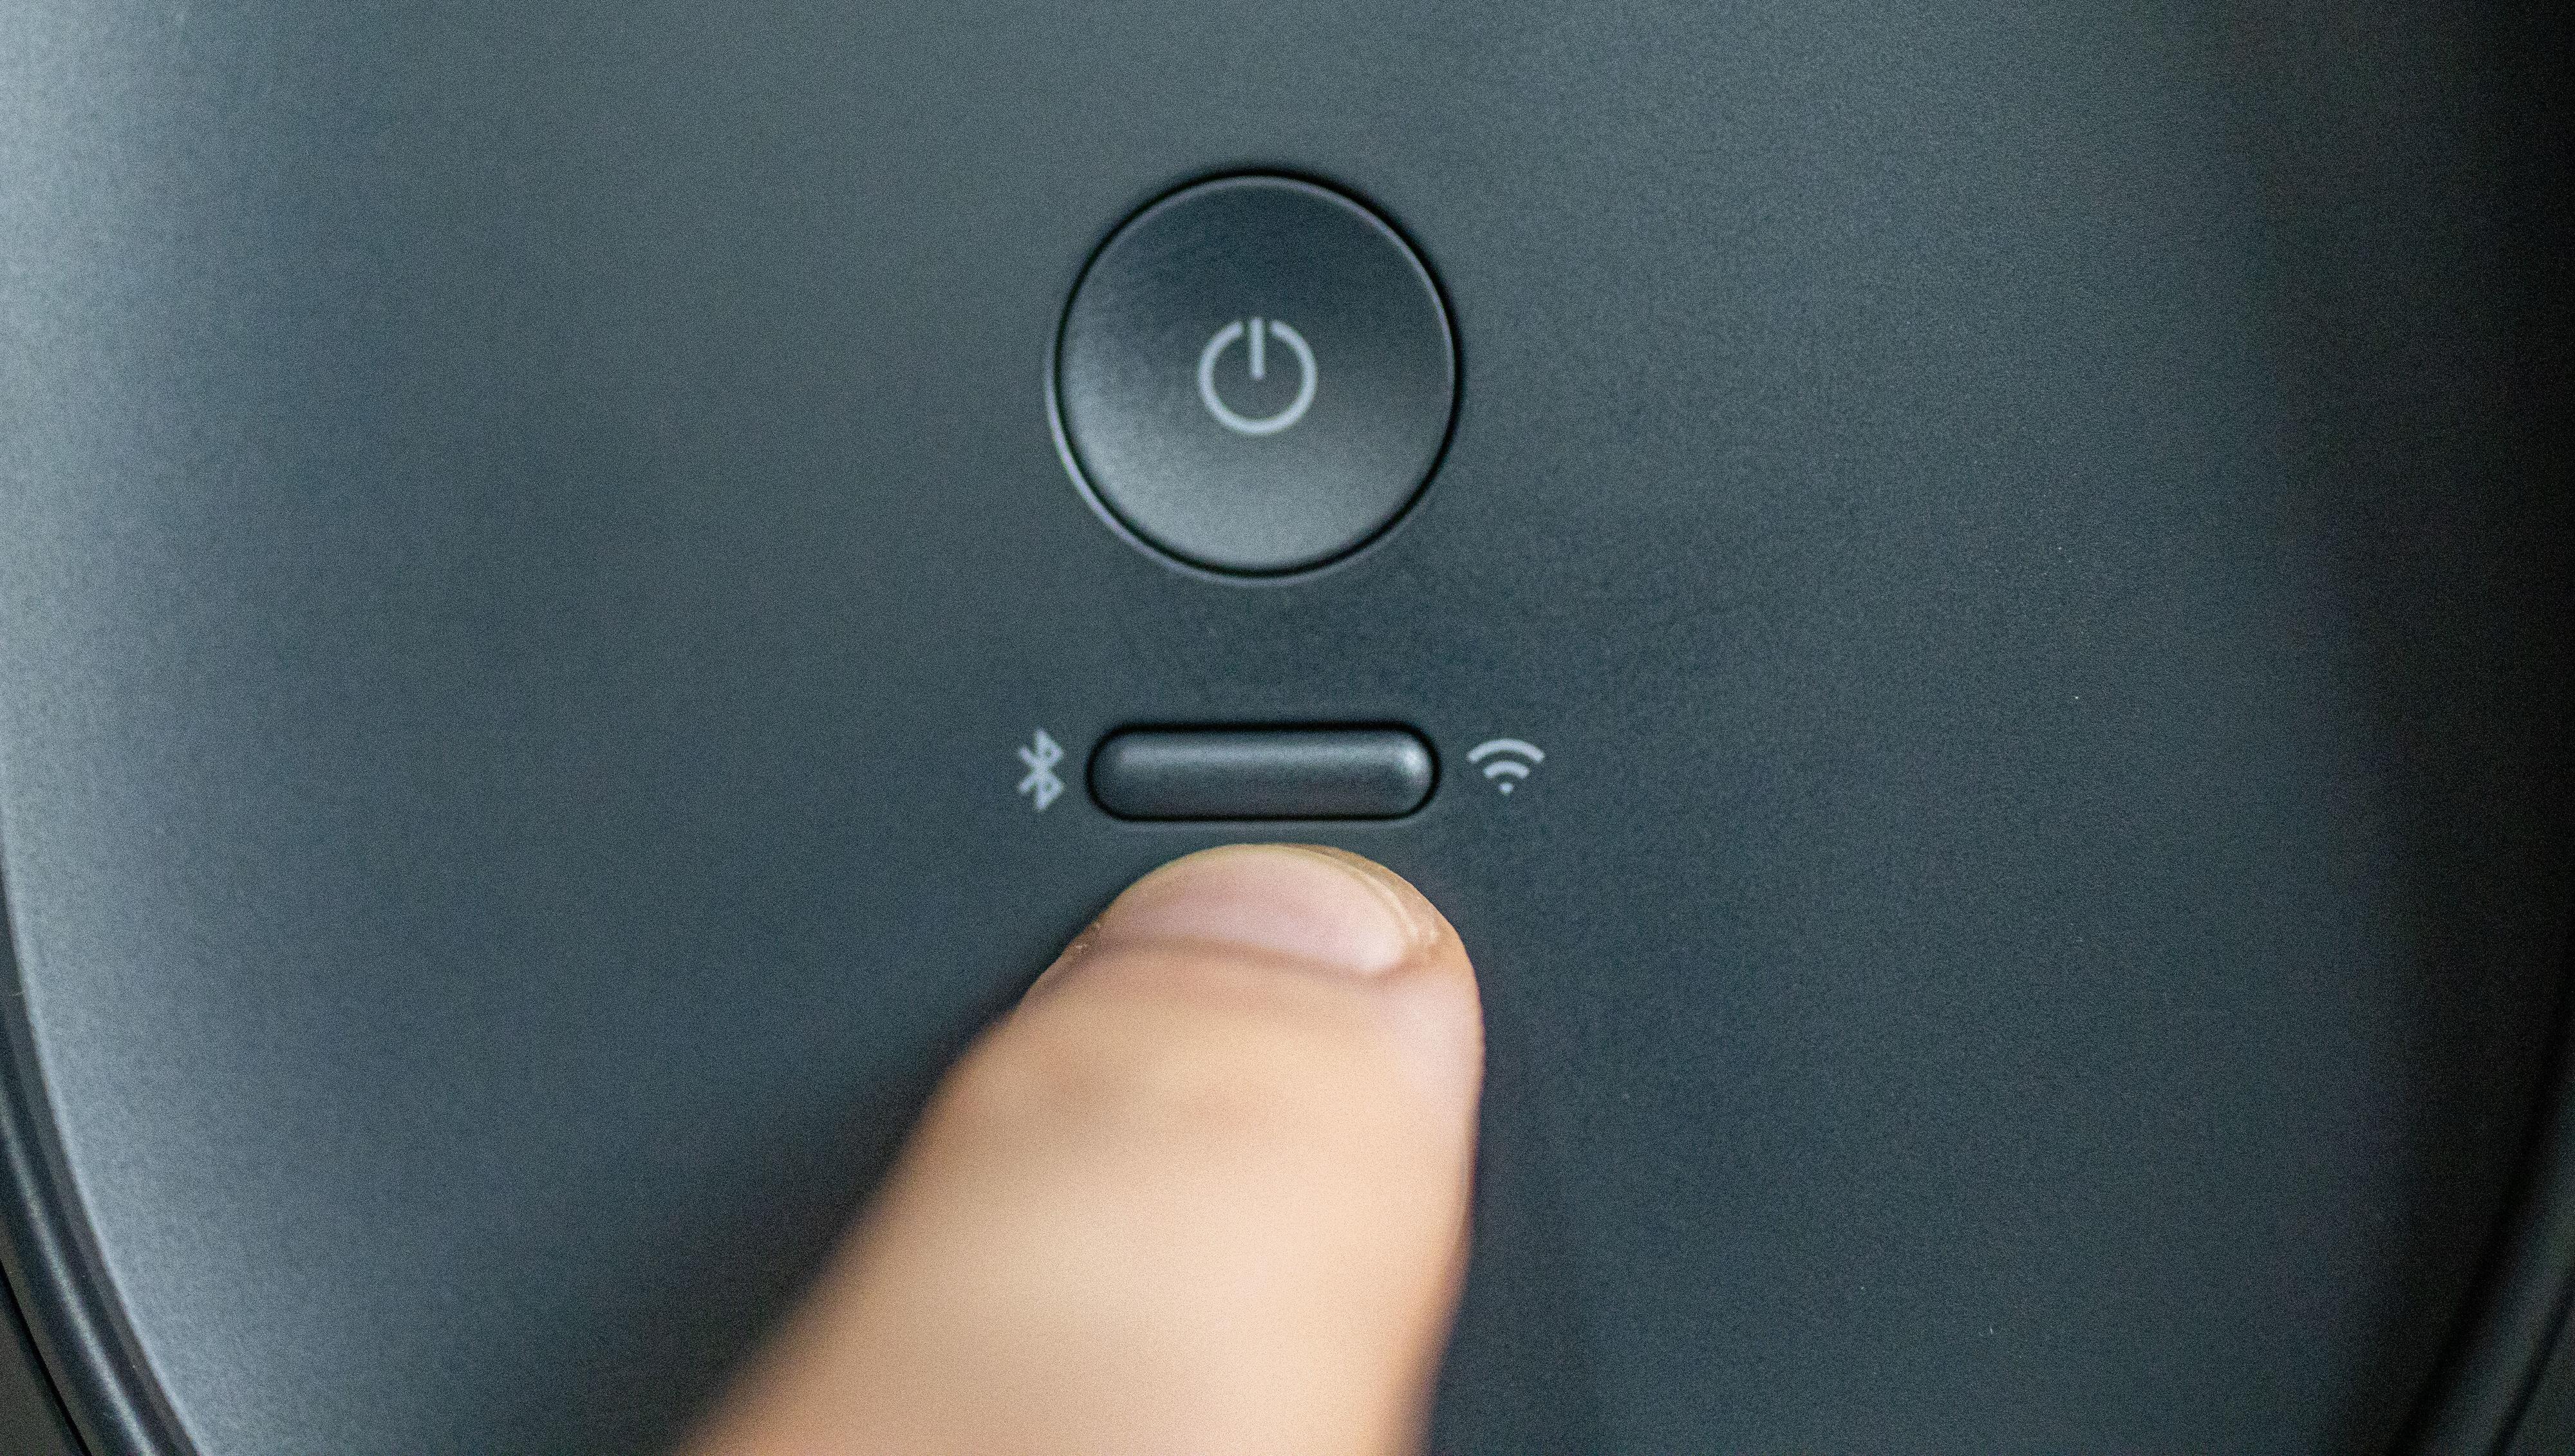 En enkel knapp på baksiden bytter mellom WiFi- og Bluetooth-modus.